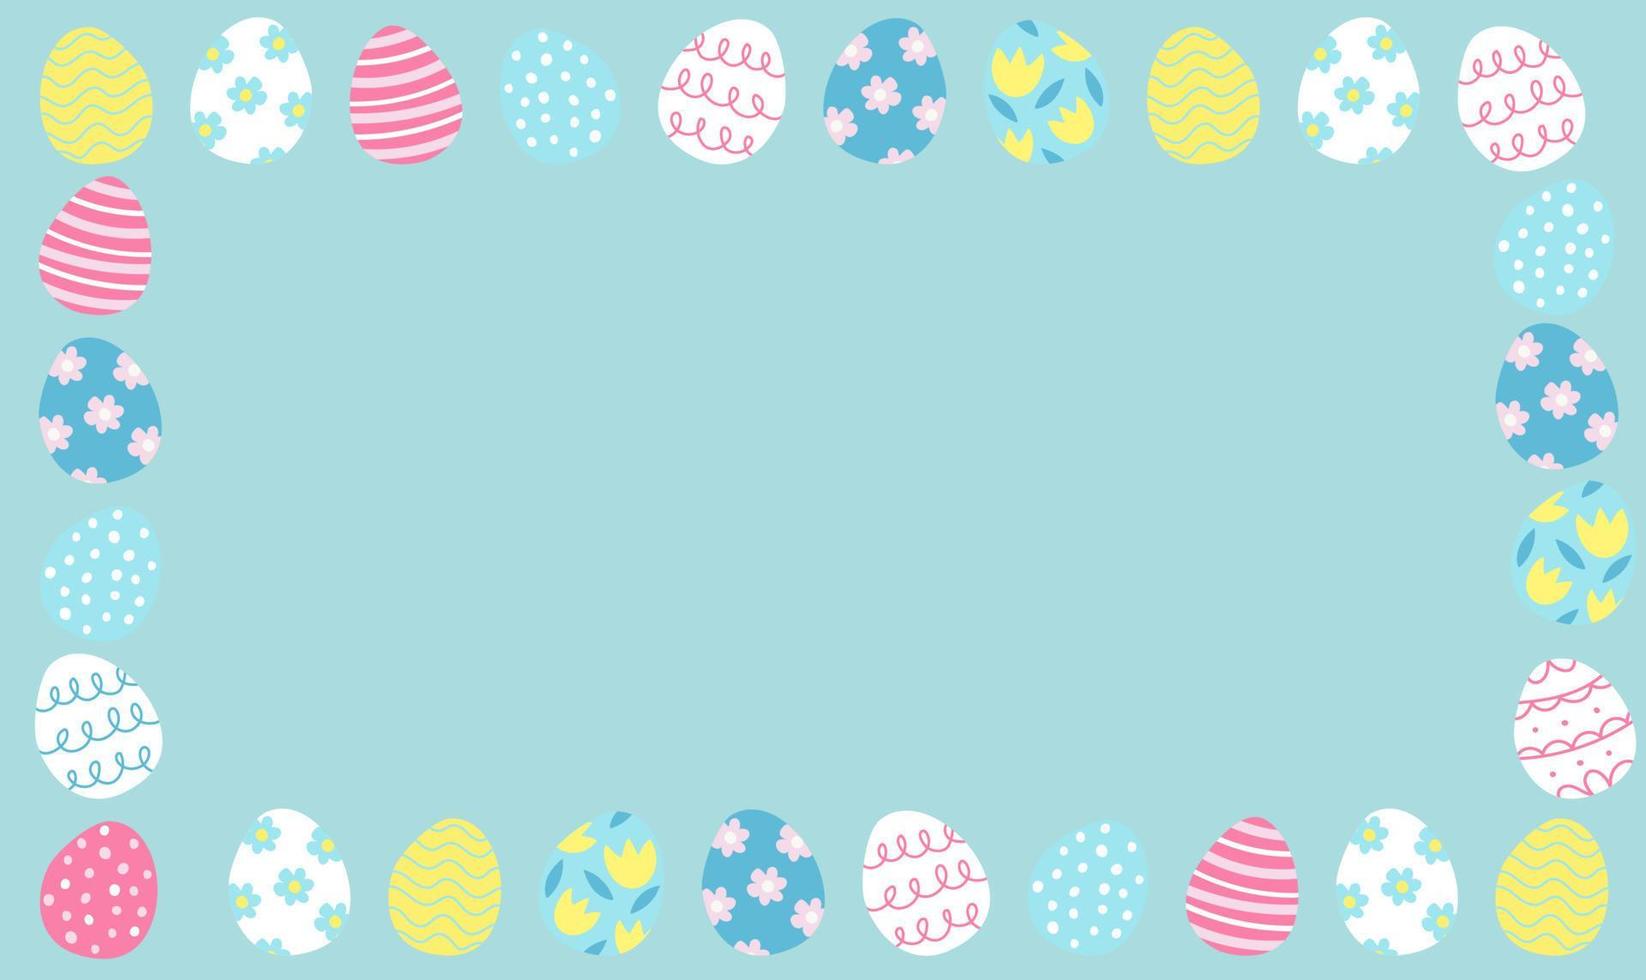 Pascua de Resurrección bandera con chocolate conejos y hermosamente pintado huevos conjunto en el césped. concepto de Pascua de Resurrección huevo cazar o huevo decorando Arte. antecedentes pastel color mínimo diseño vector